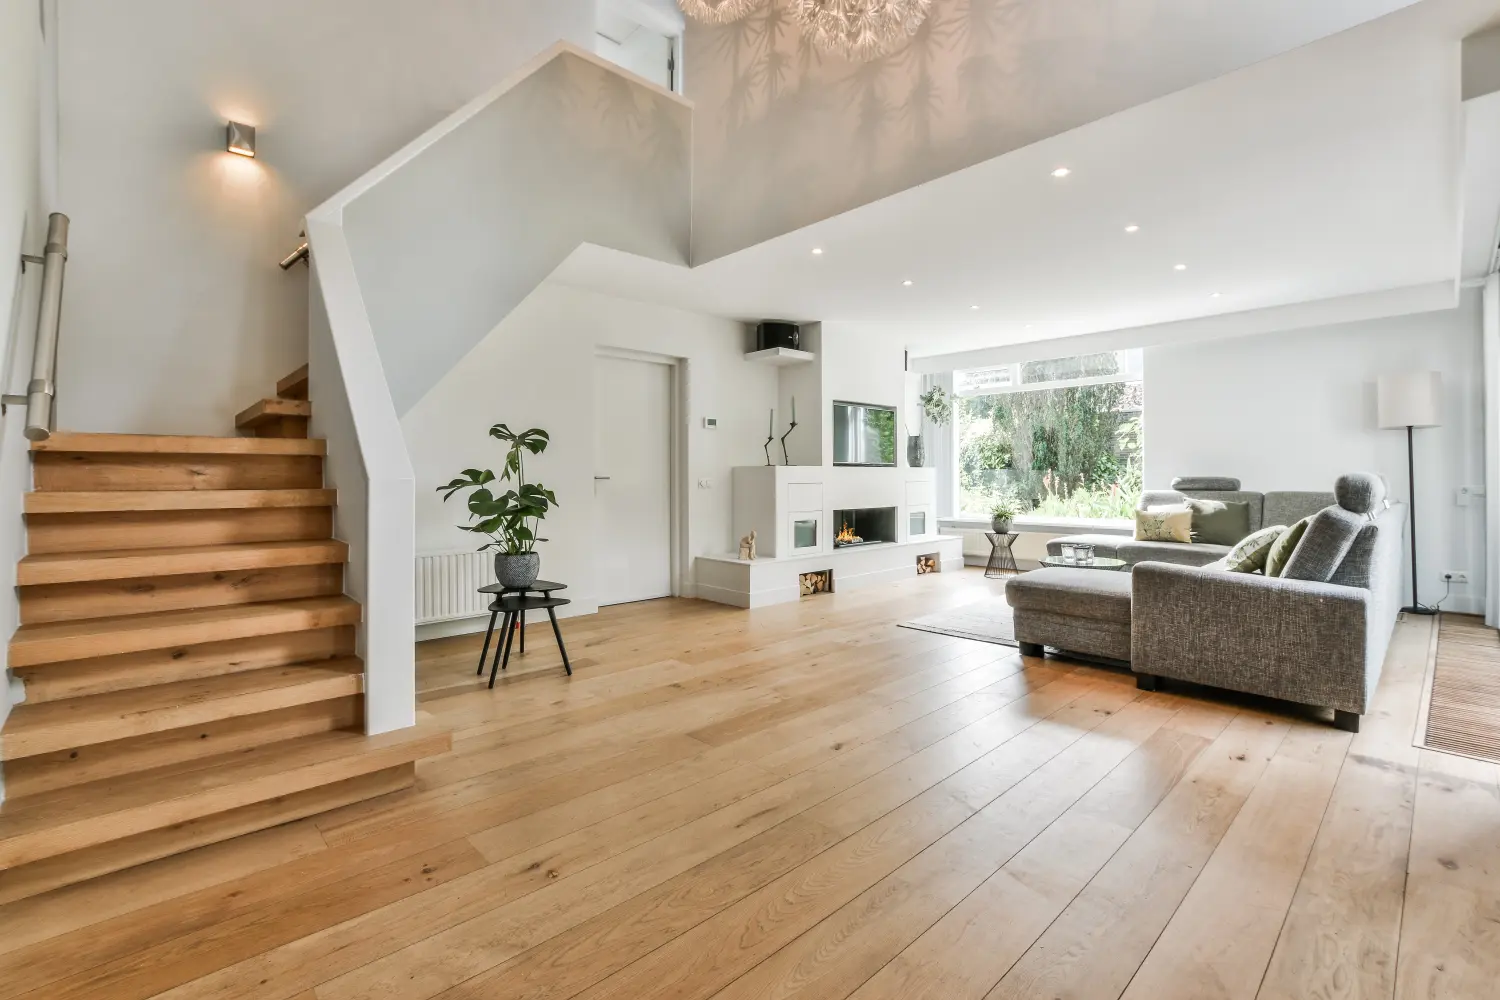 Gemütliches Hausinterieur mit Holzboden, großem grauen Sofa und Treppe zum zweiten Stock